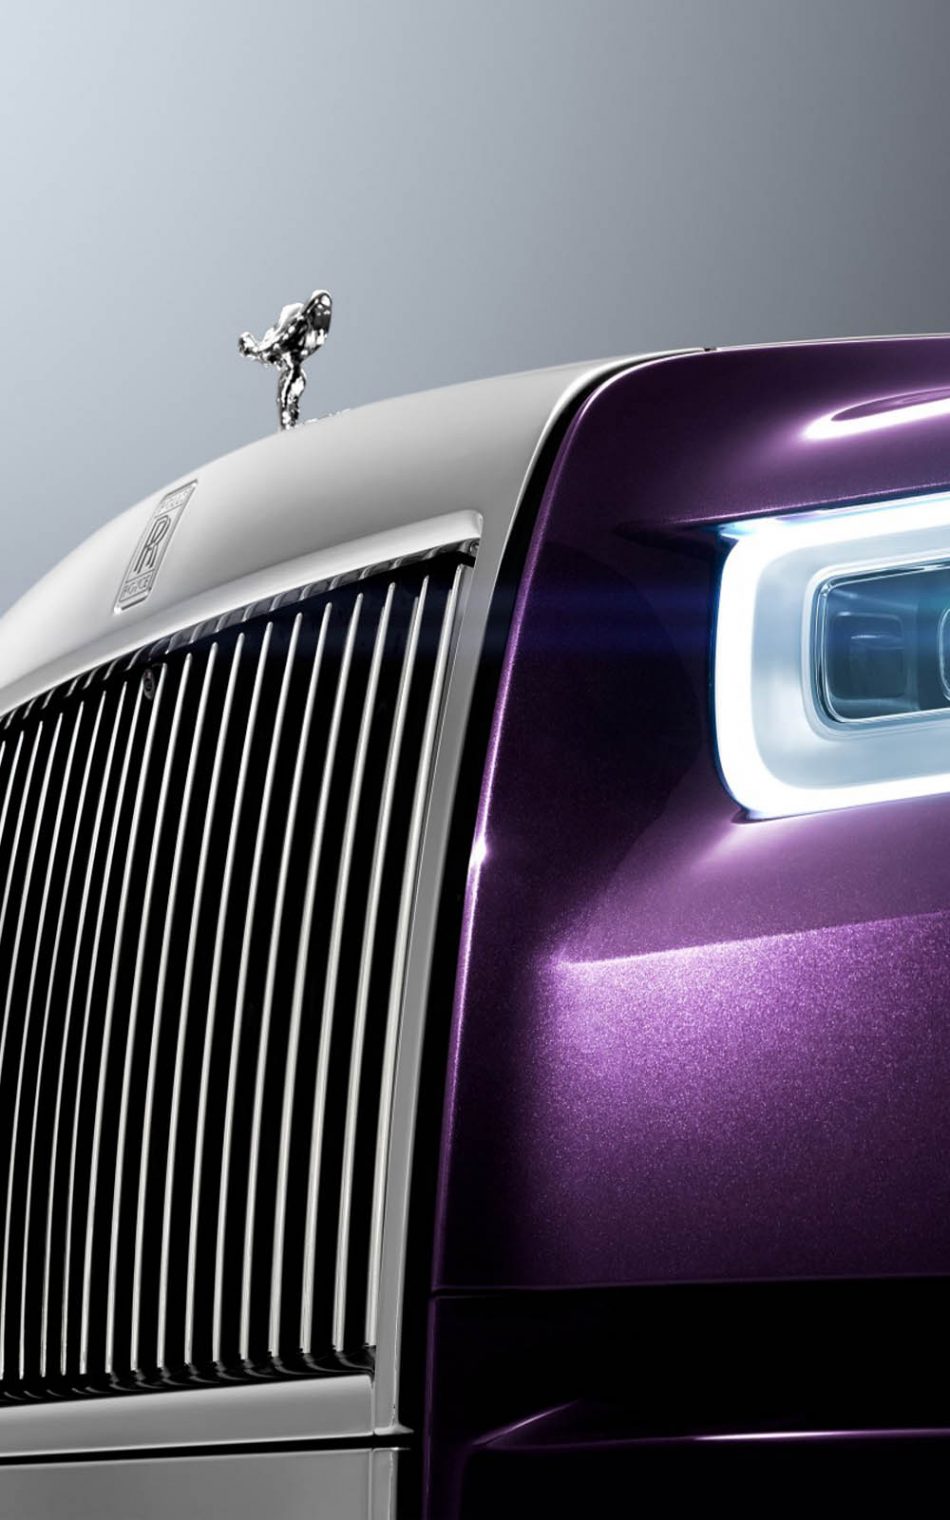 Rolls Royce Phantom Ewb 2017 Wallpapers